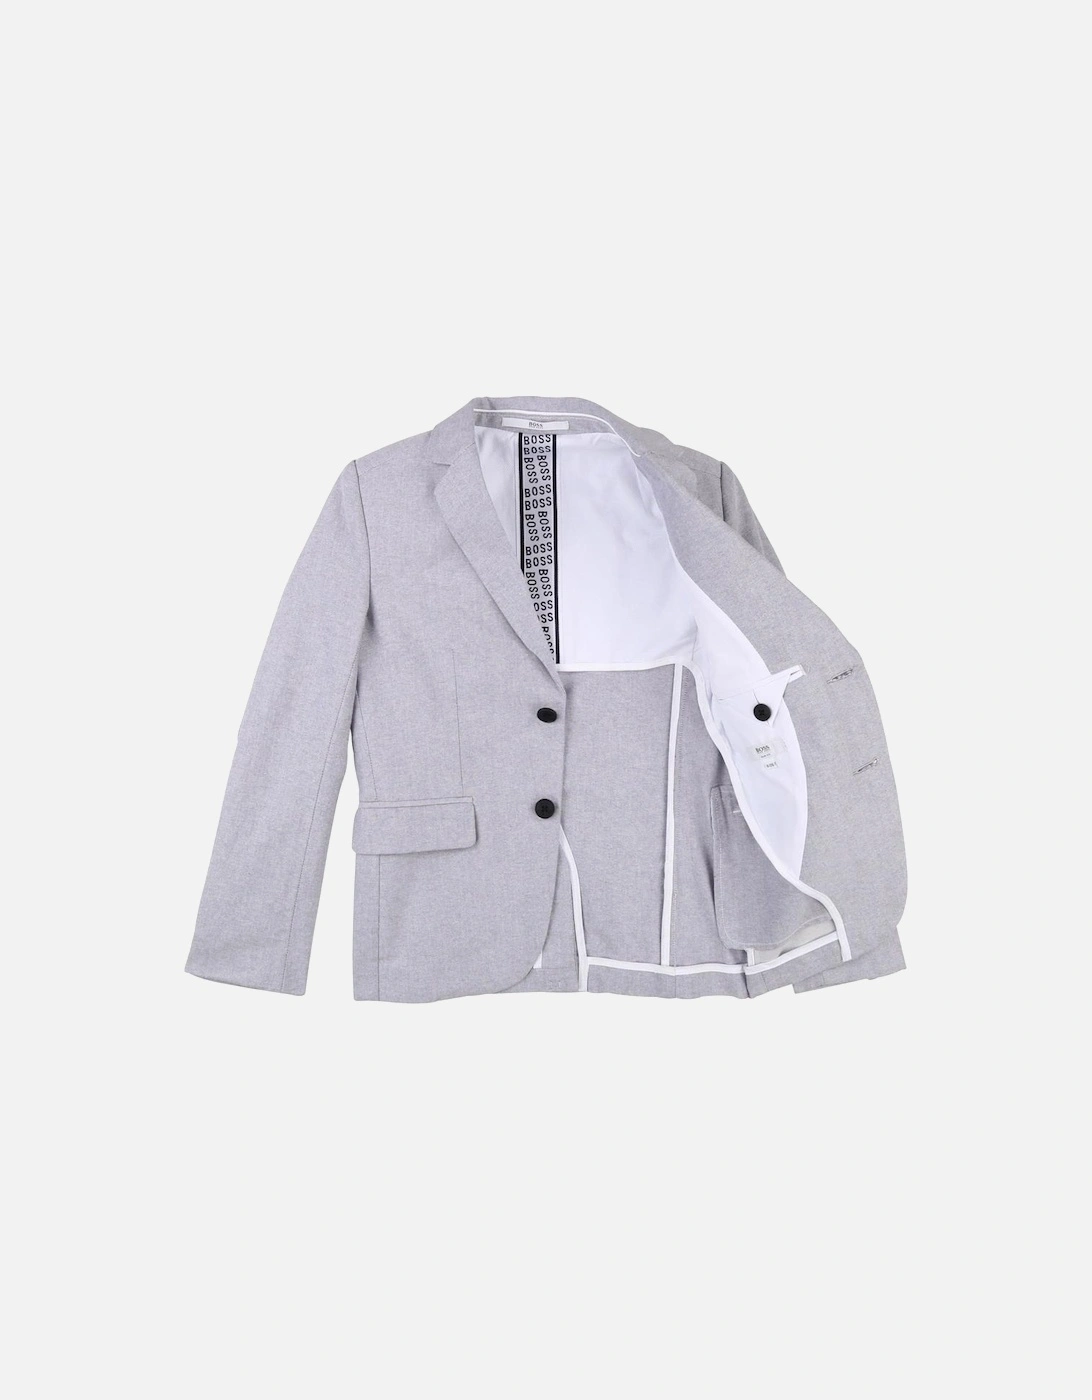 Boys Grey Cotton Suit Jacket